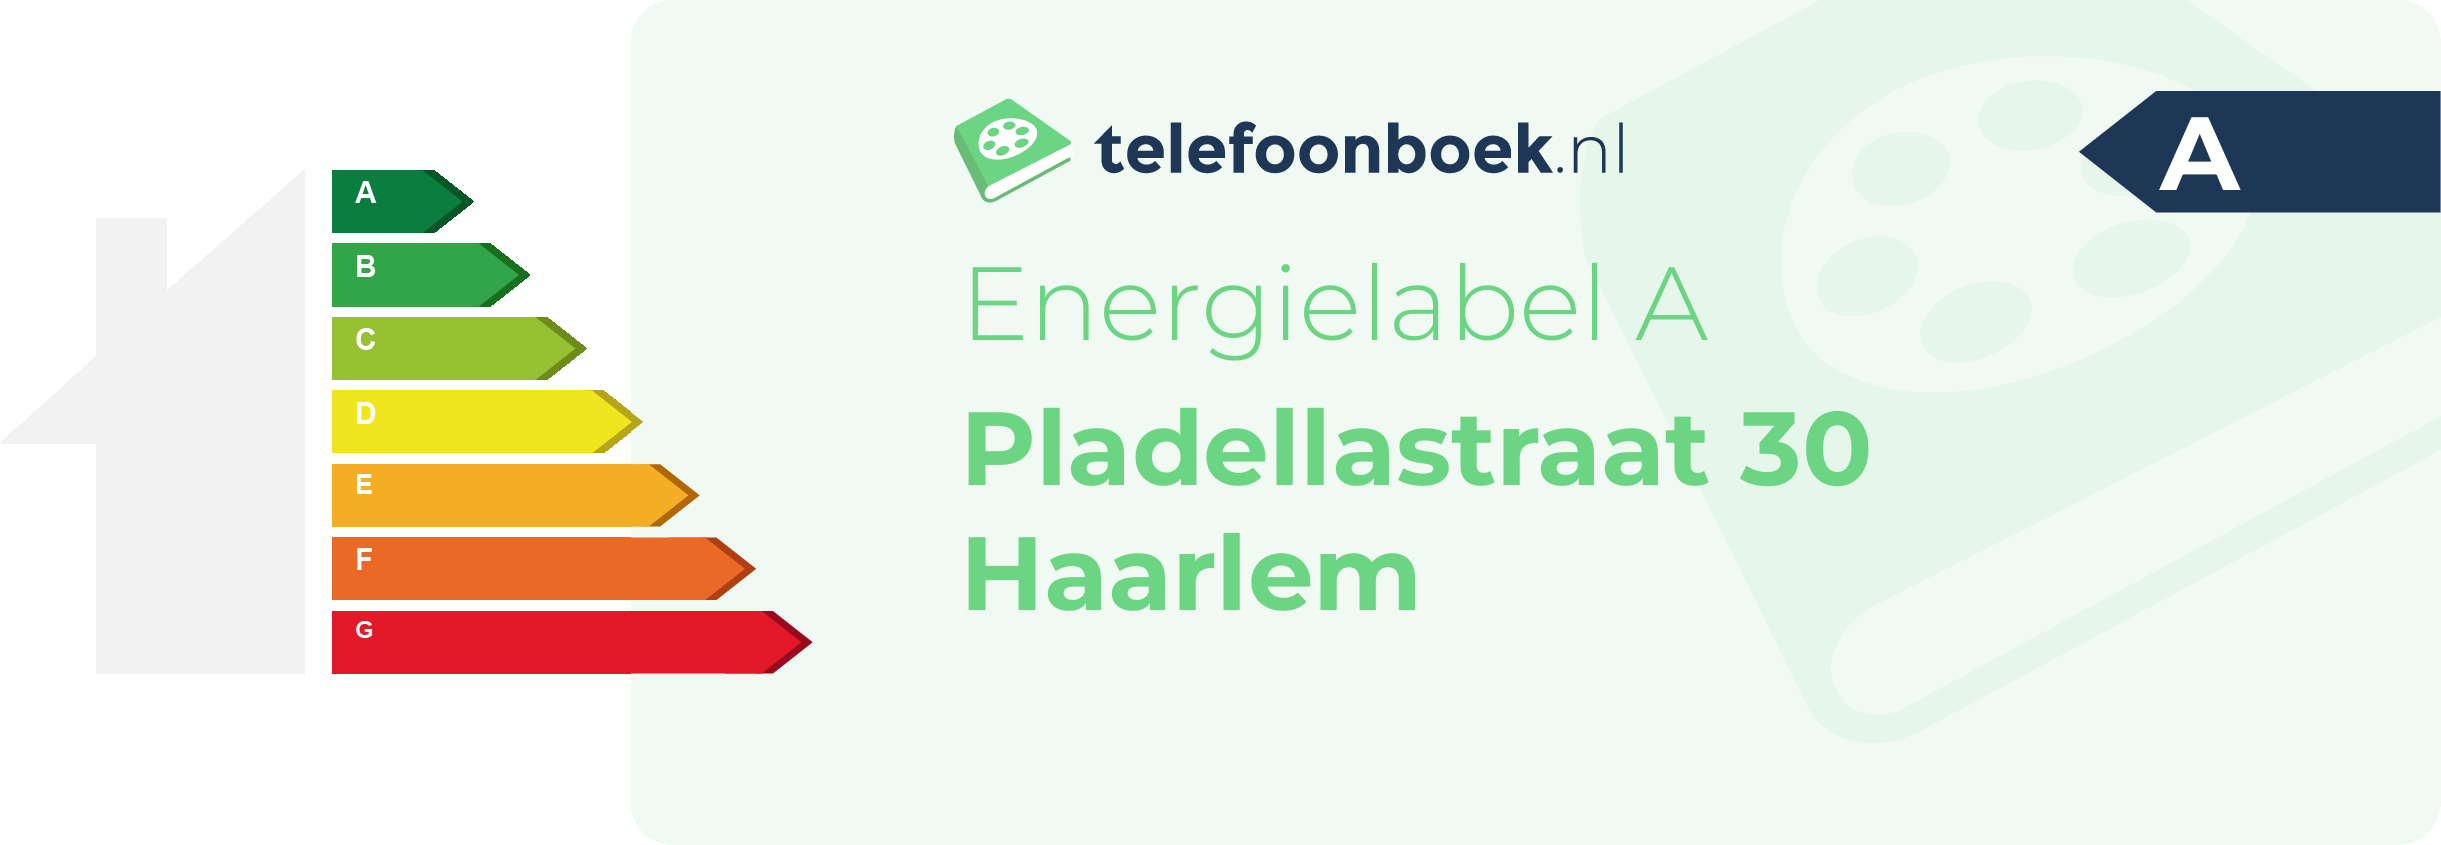 Energielabel Pladellastraat 30 Haarlem